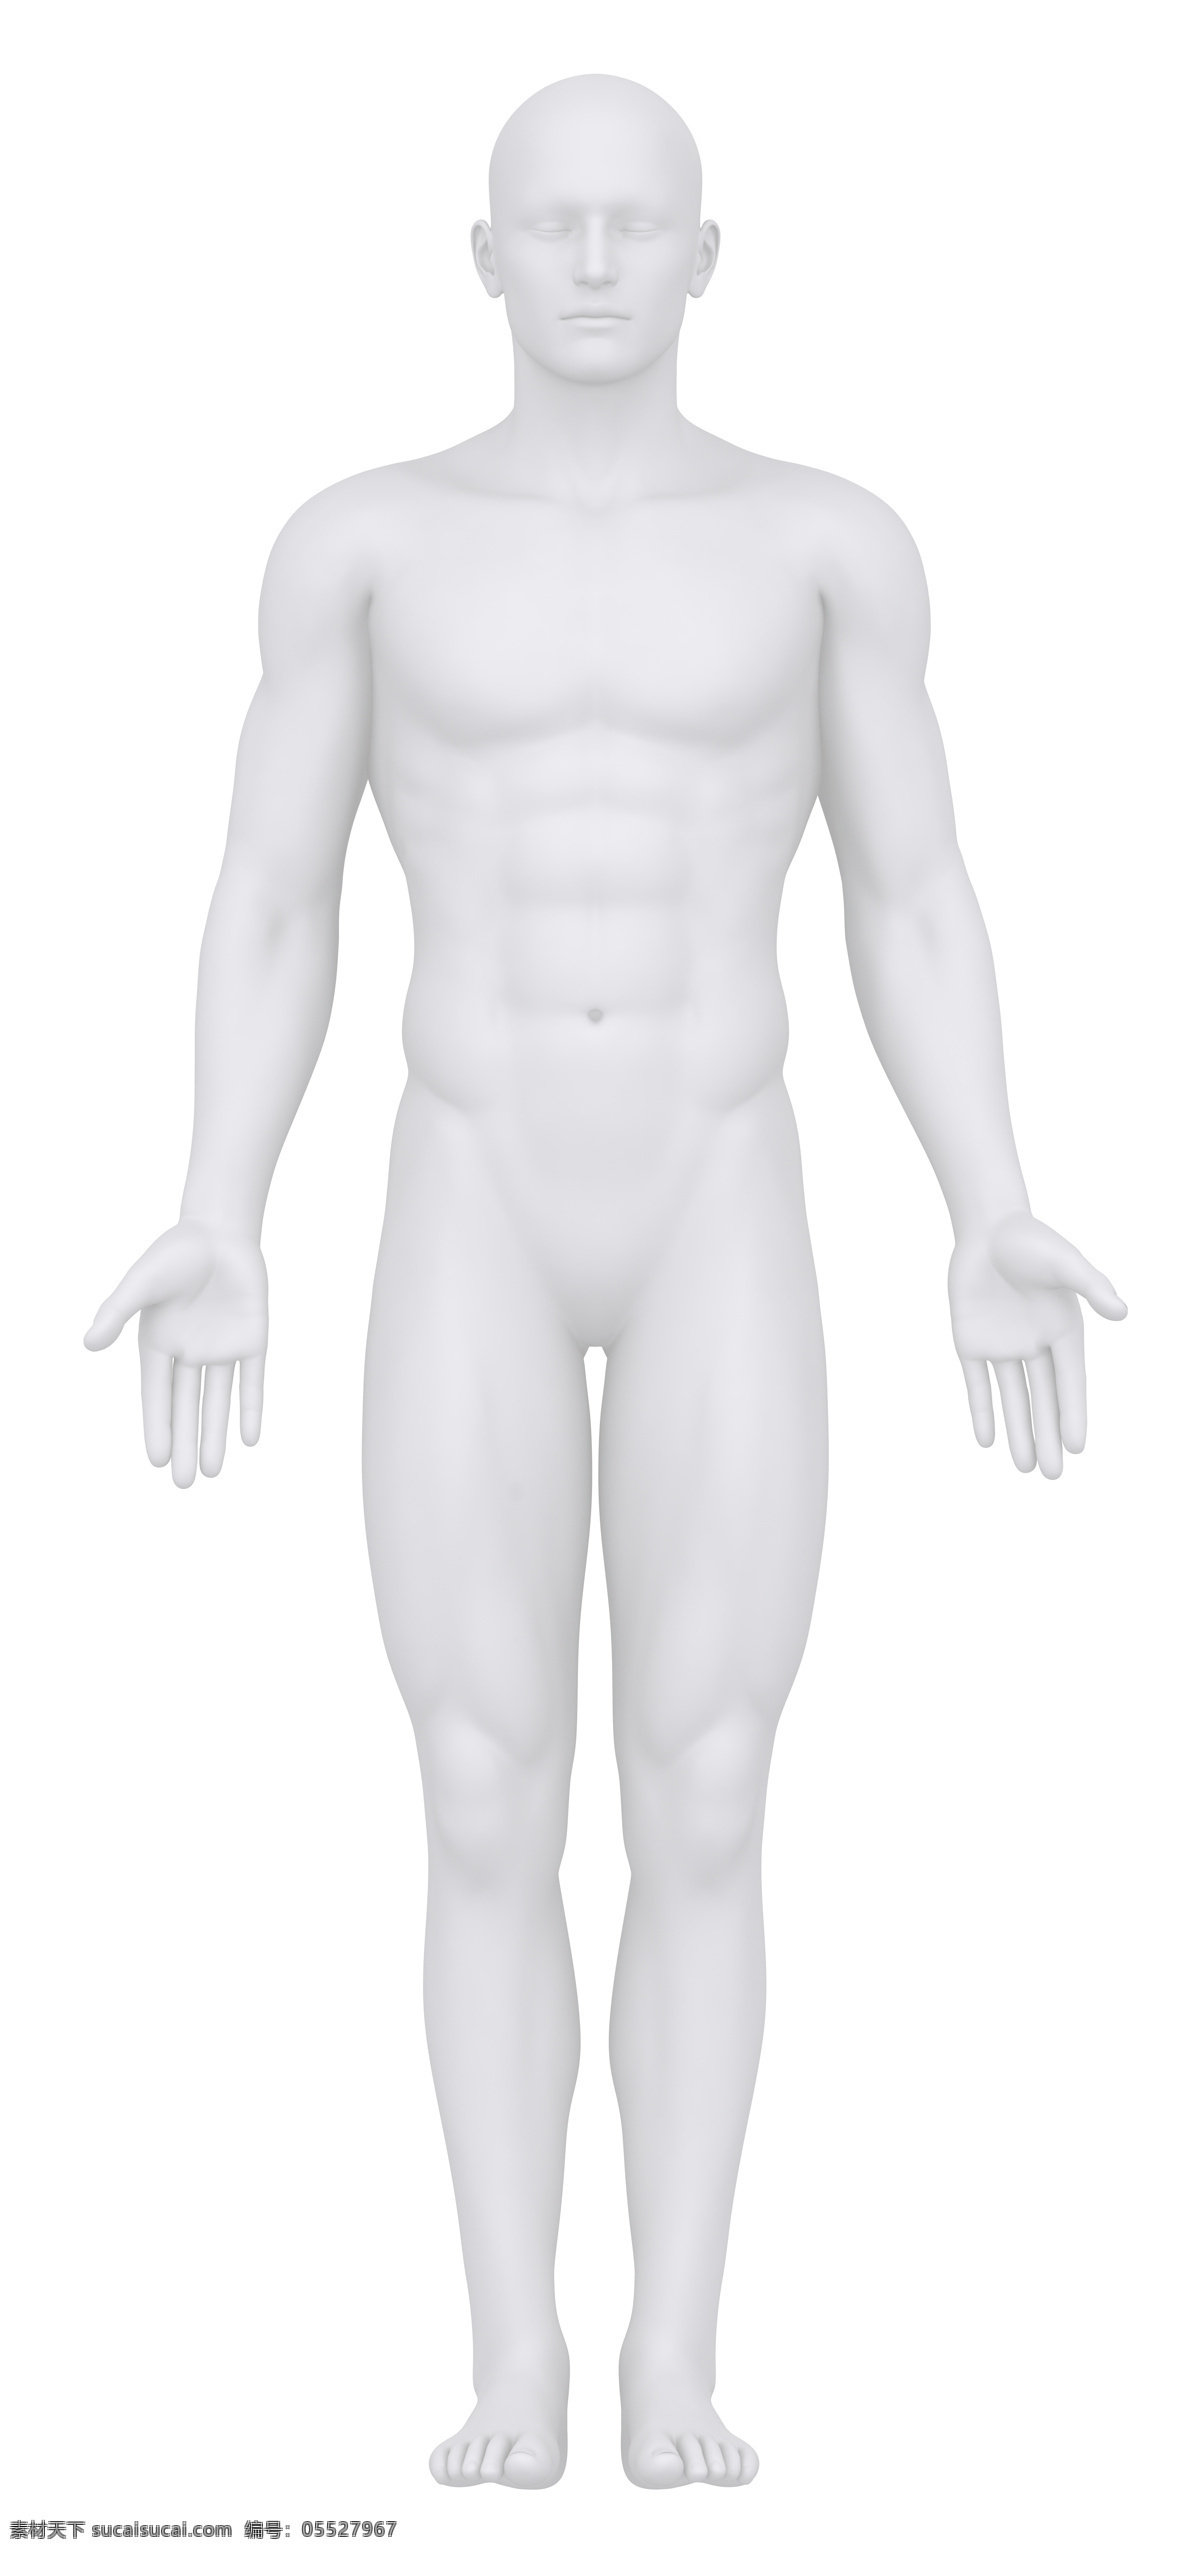 男性 人体 结构 男性器官 男性人体 人体器官 医疗科学 医学 人体器官图 人物图片